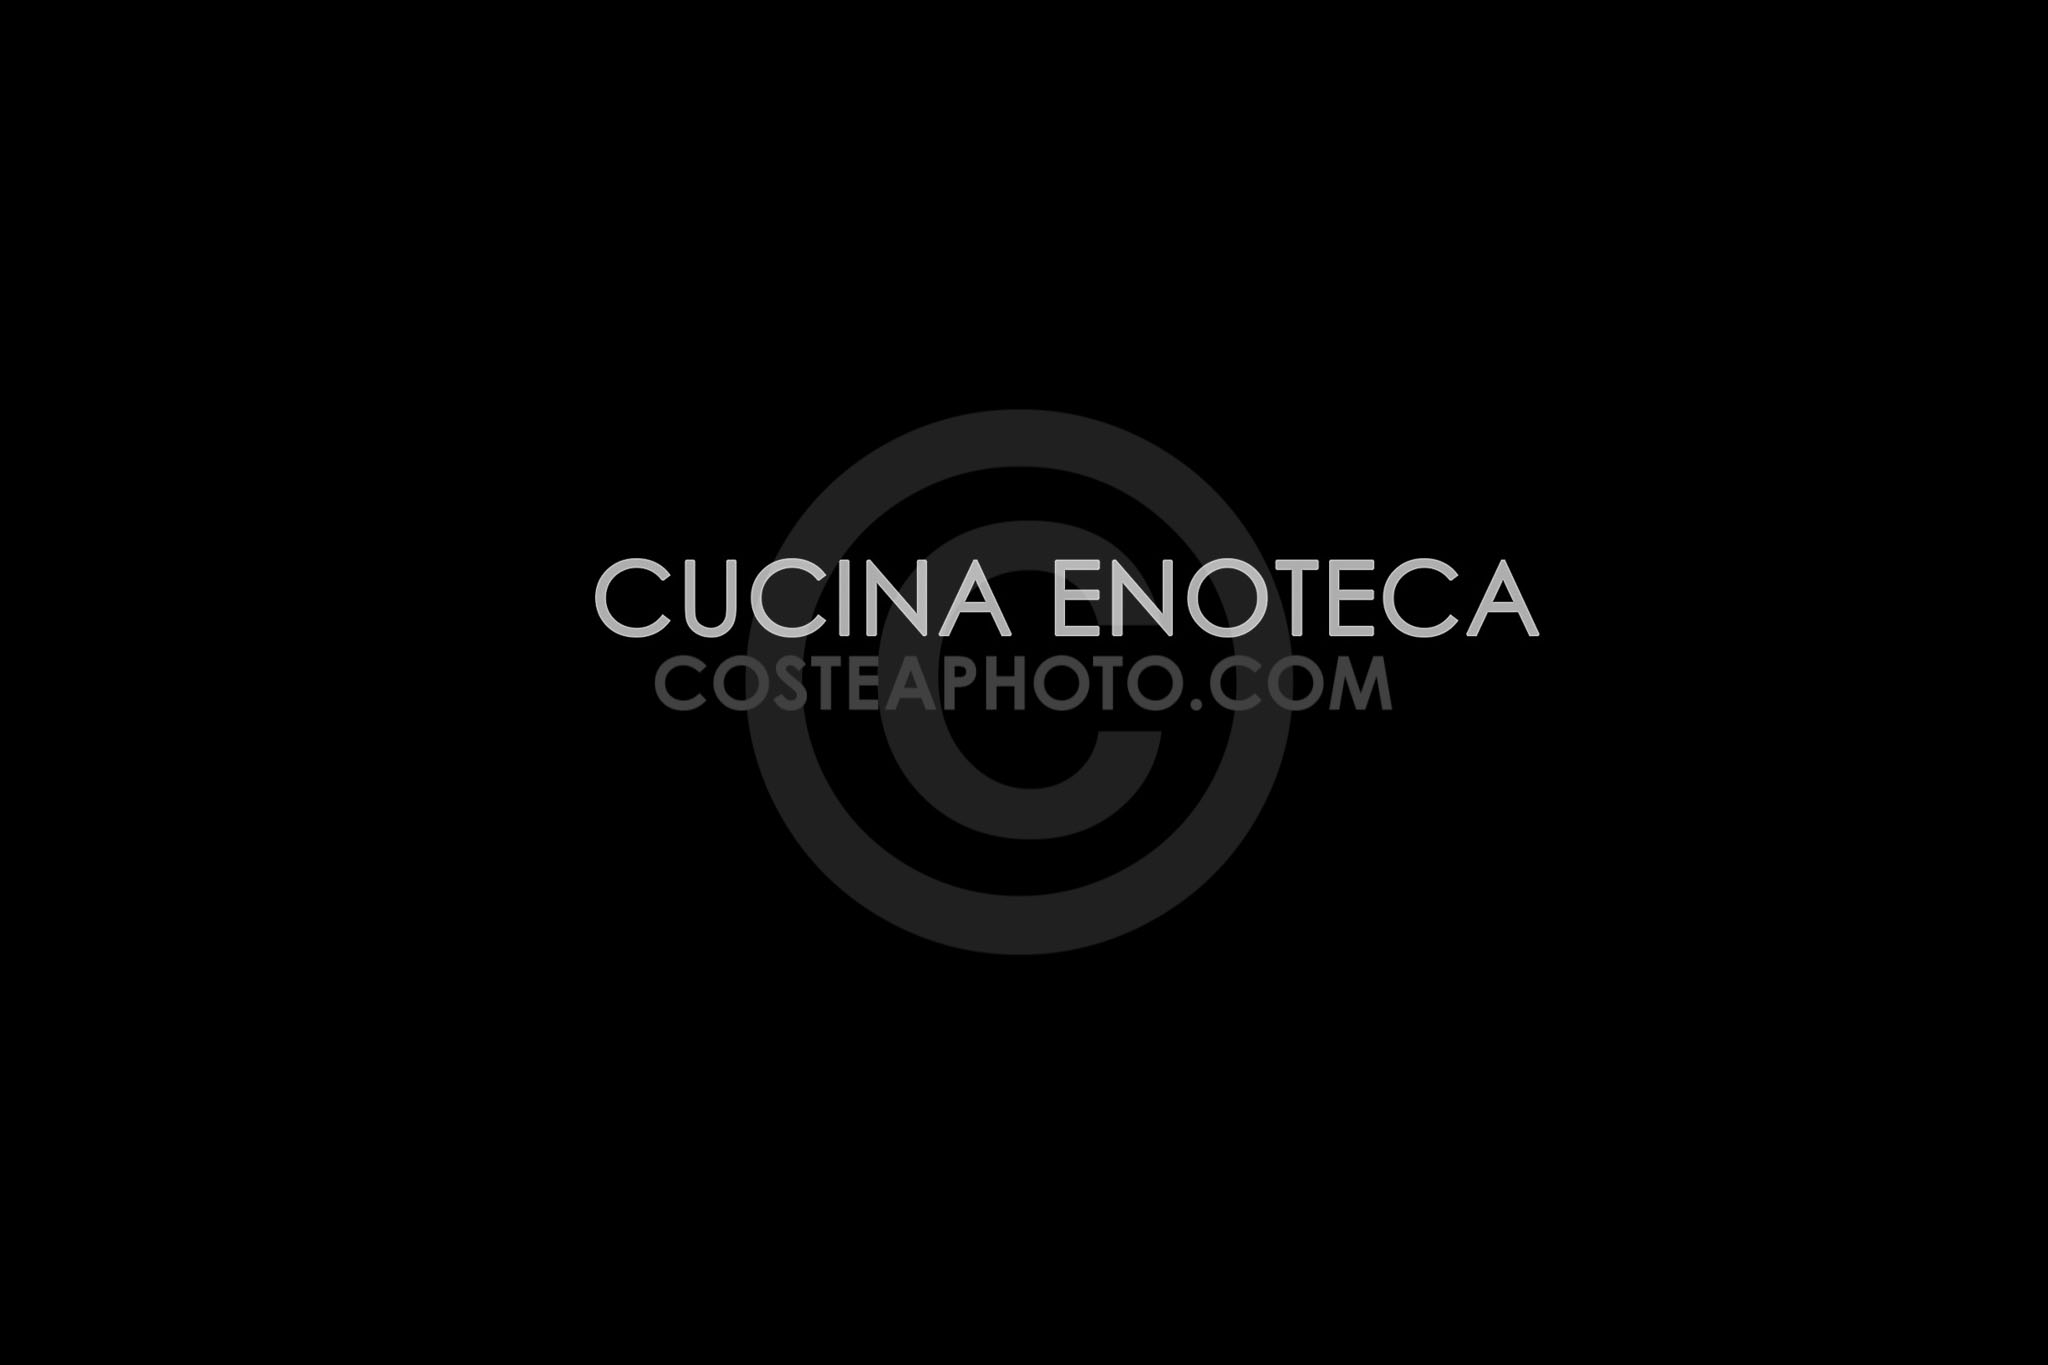 (001) CUCINA ENOTECA